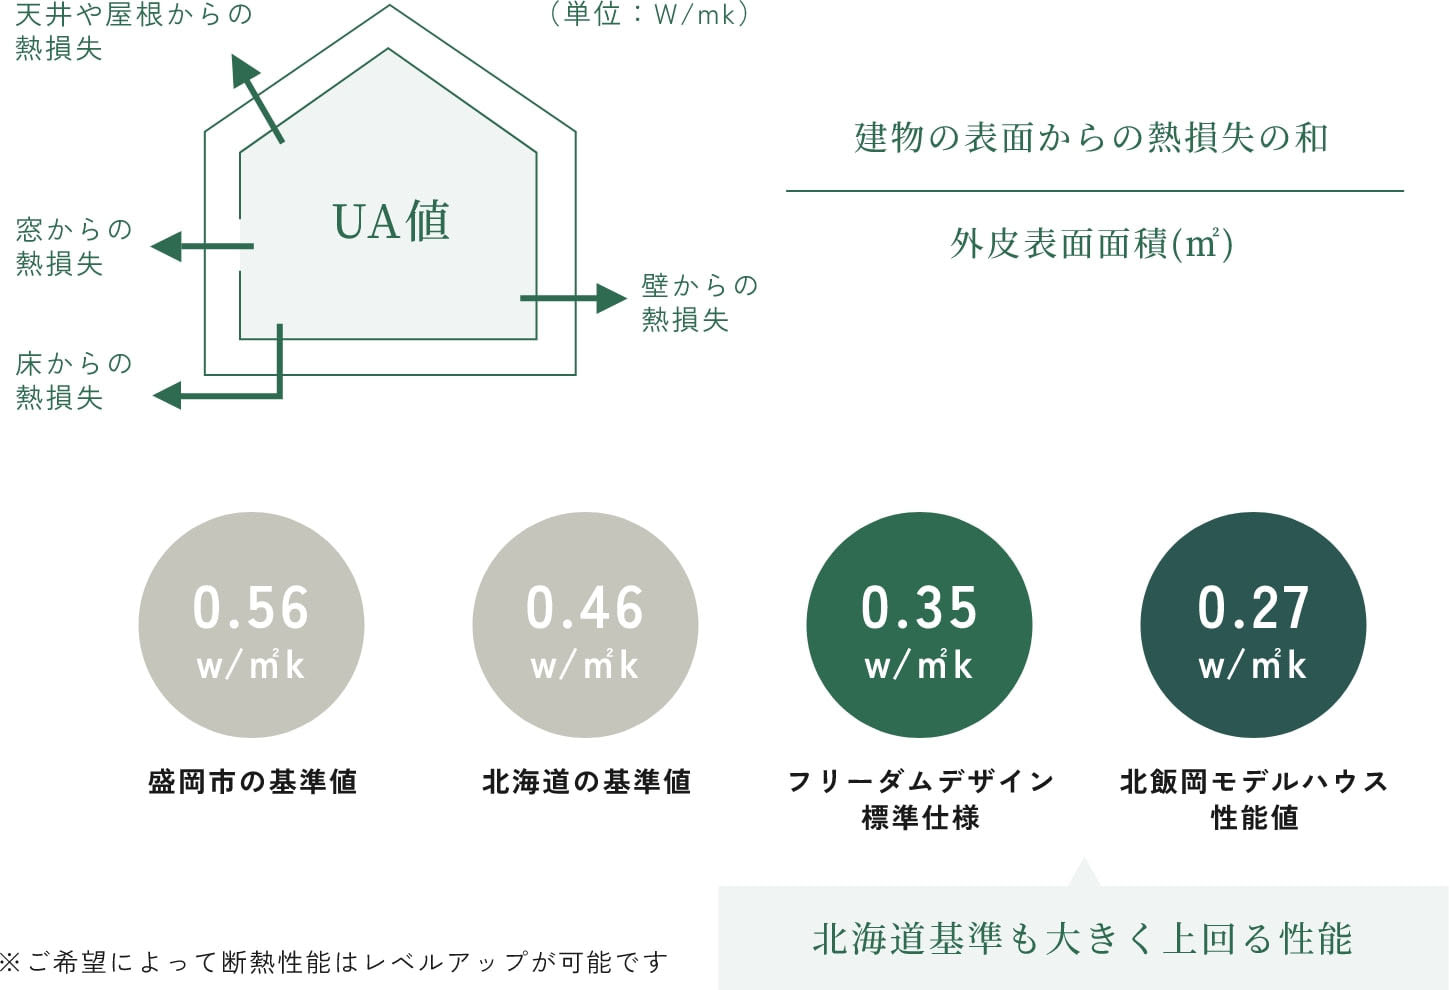 フリーダムデザインの標準仕様は北海道基準も大きく上回る性能